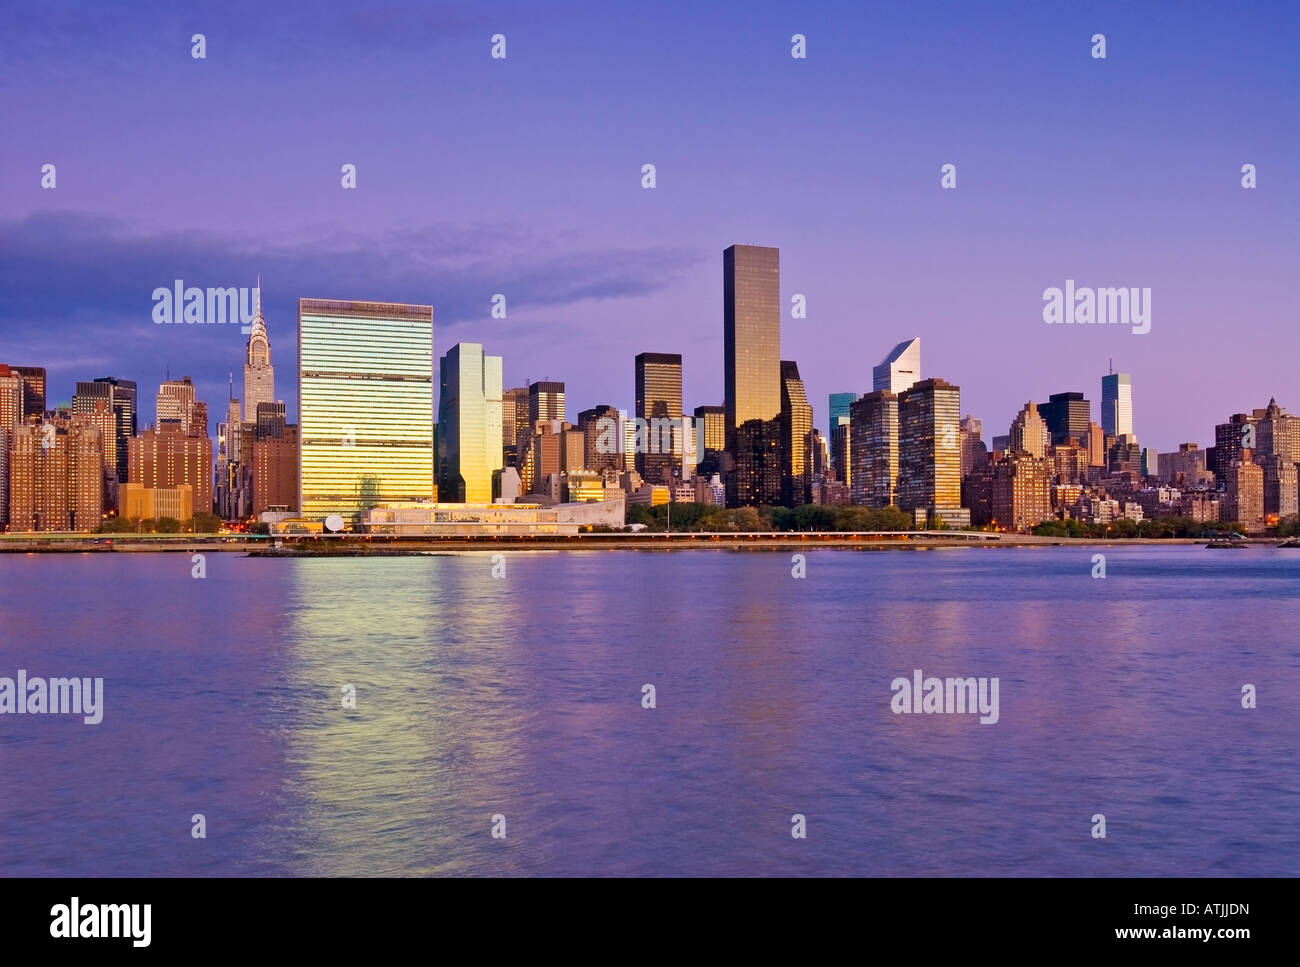 La ville de New York. Skyline de Manhattan vu de l'East River montrant le Chrysler Building et l'Organisation des Nations Unies. Banque D'Images